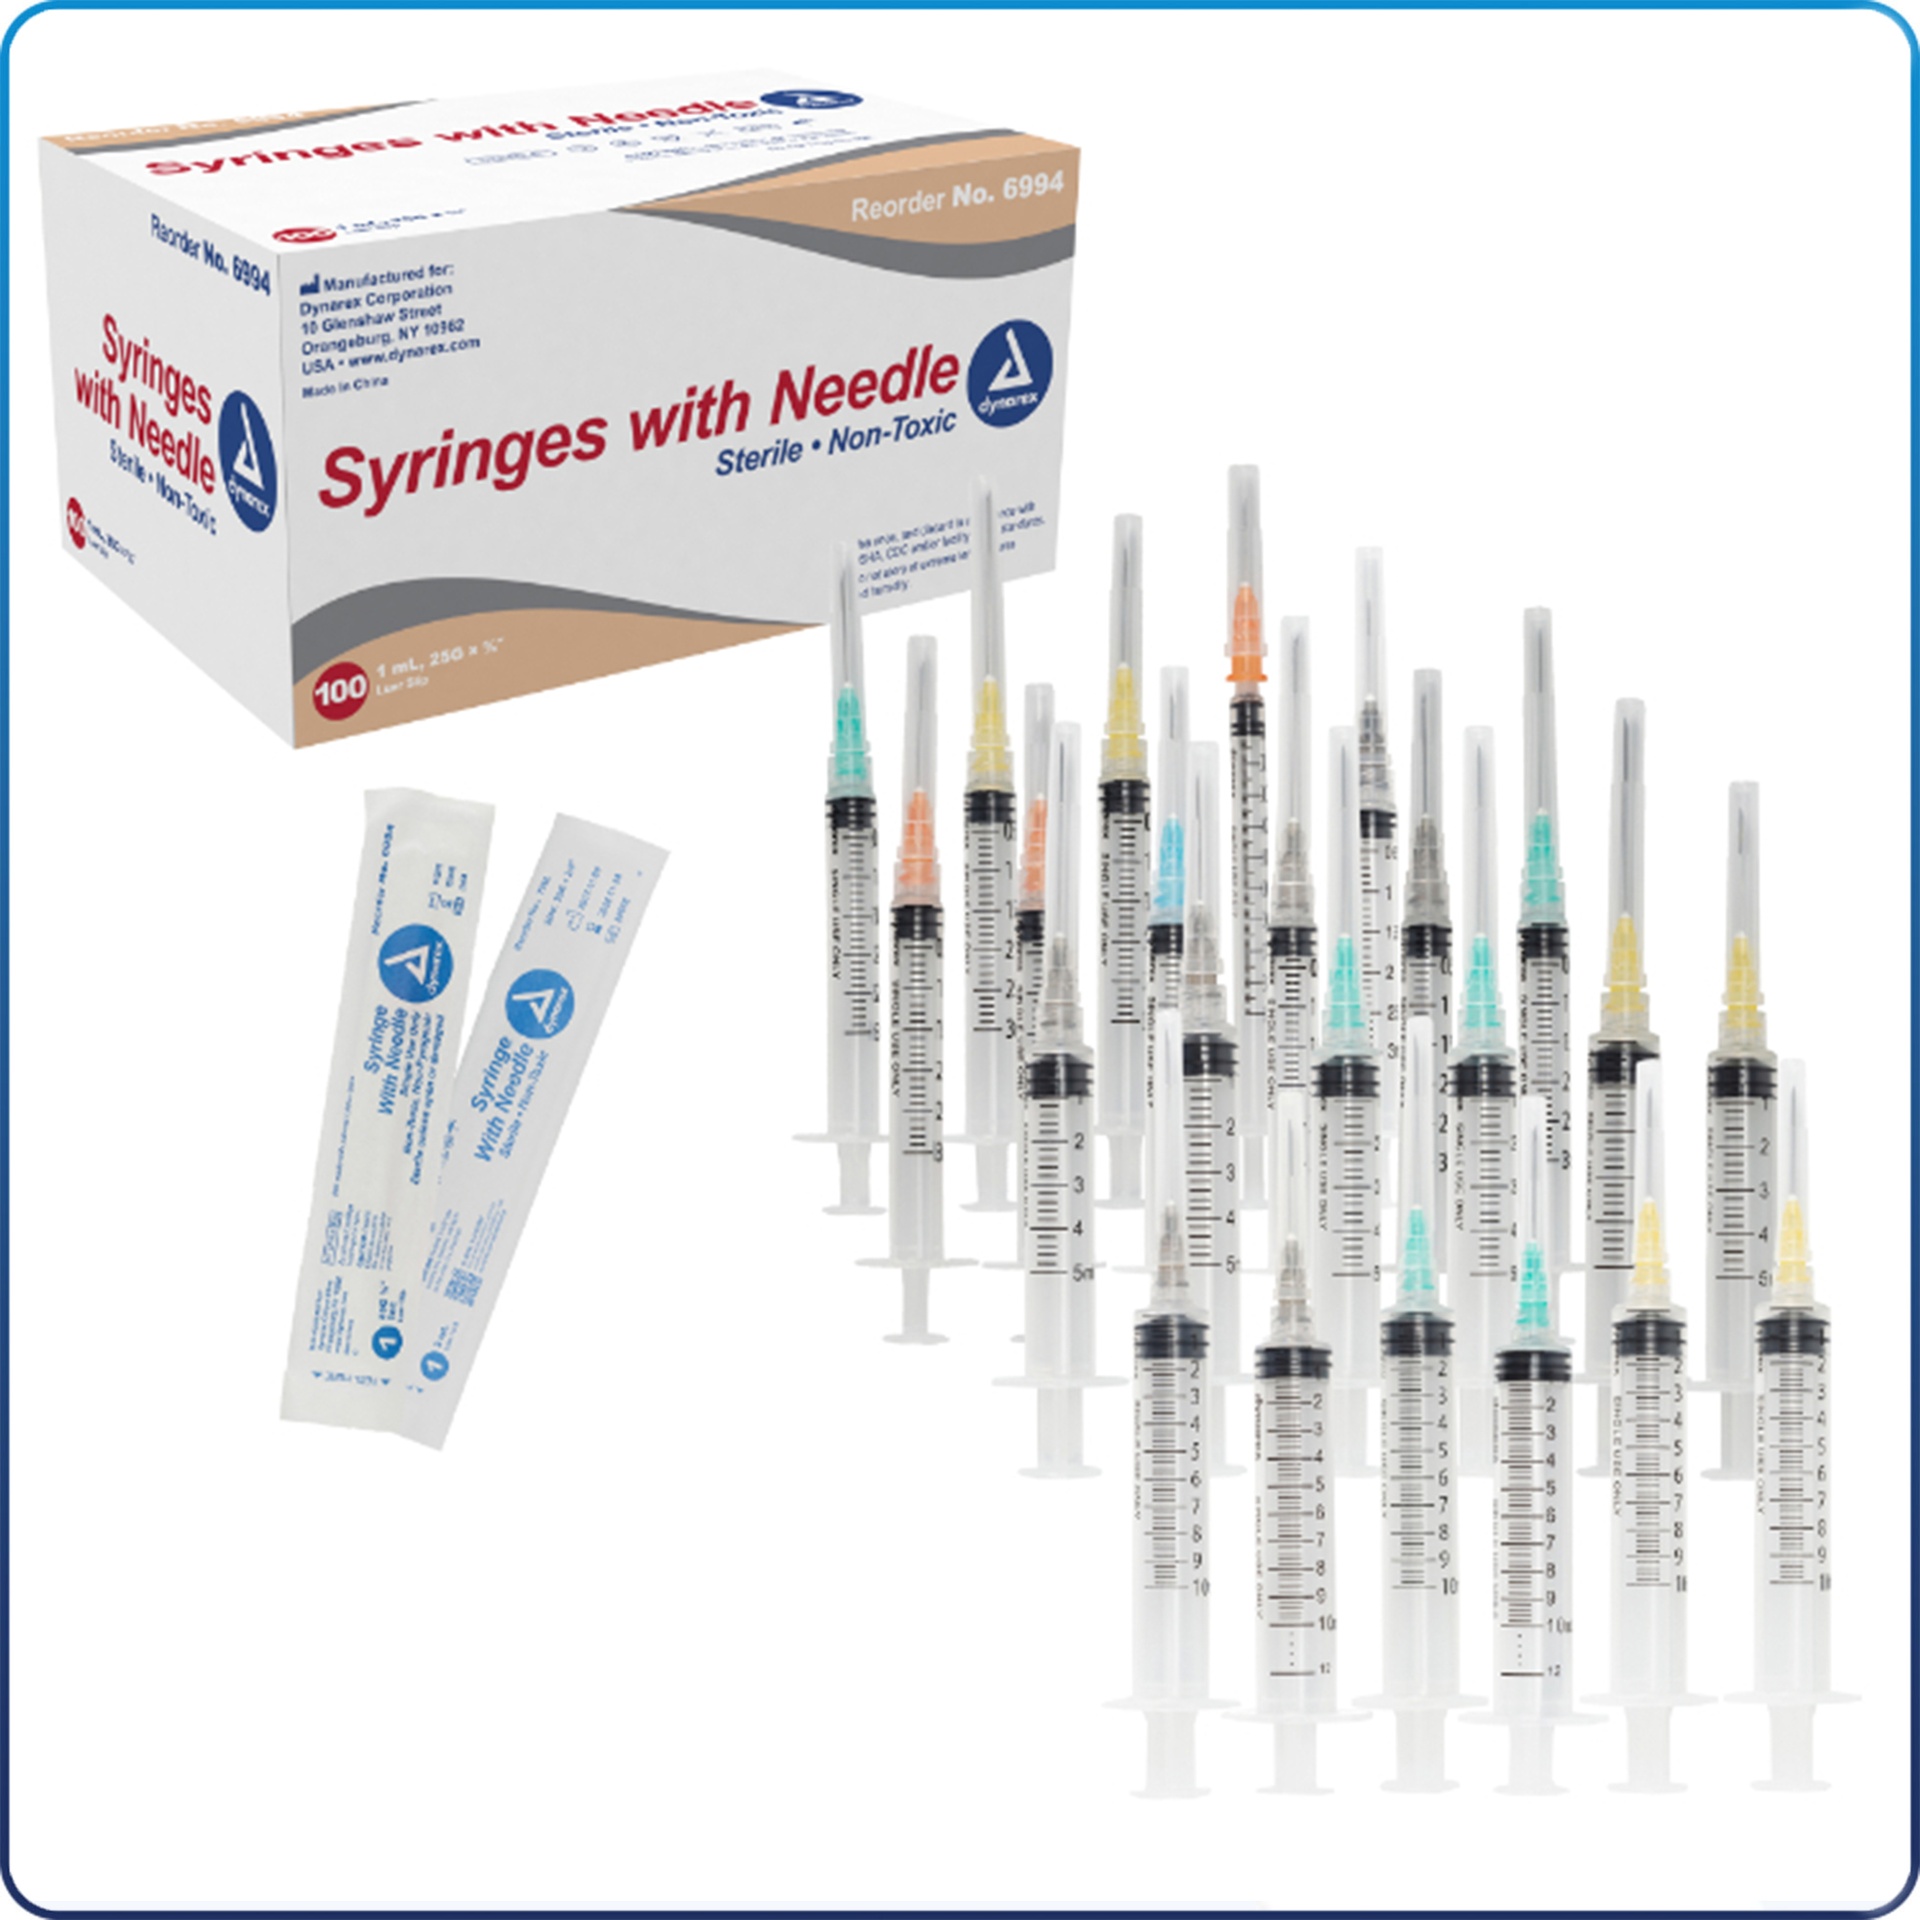 Syringe & Needle 3cc 22G x 1/12" Lure-Lock, 100/Box